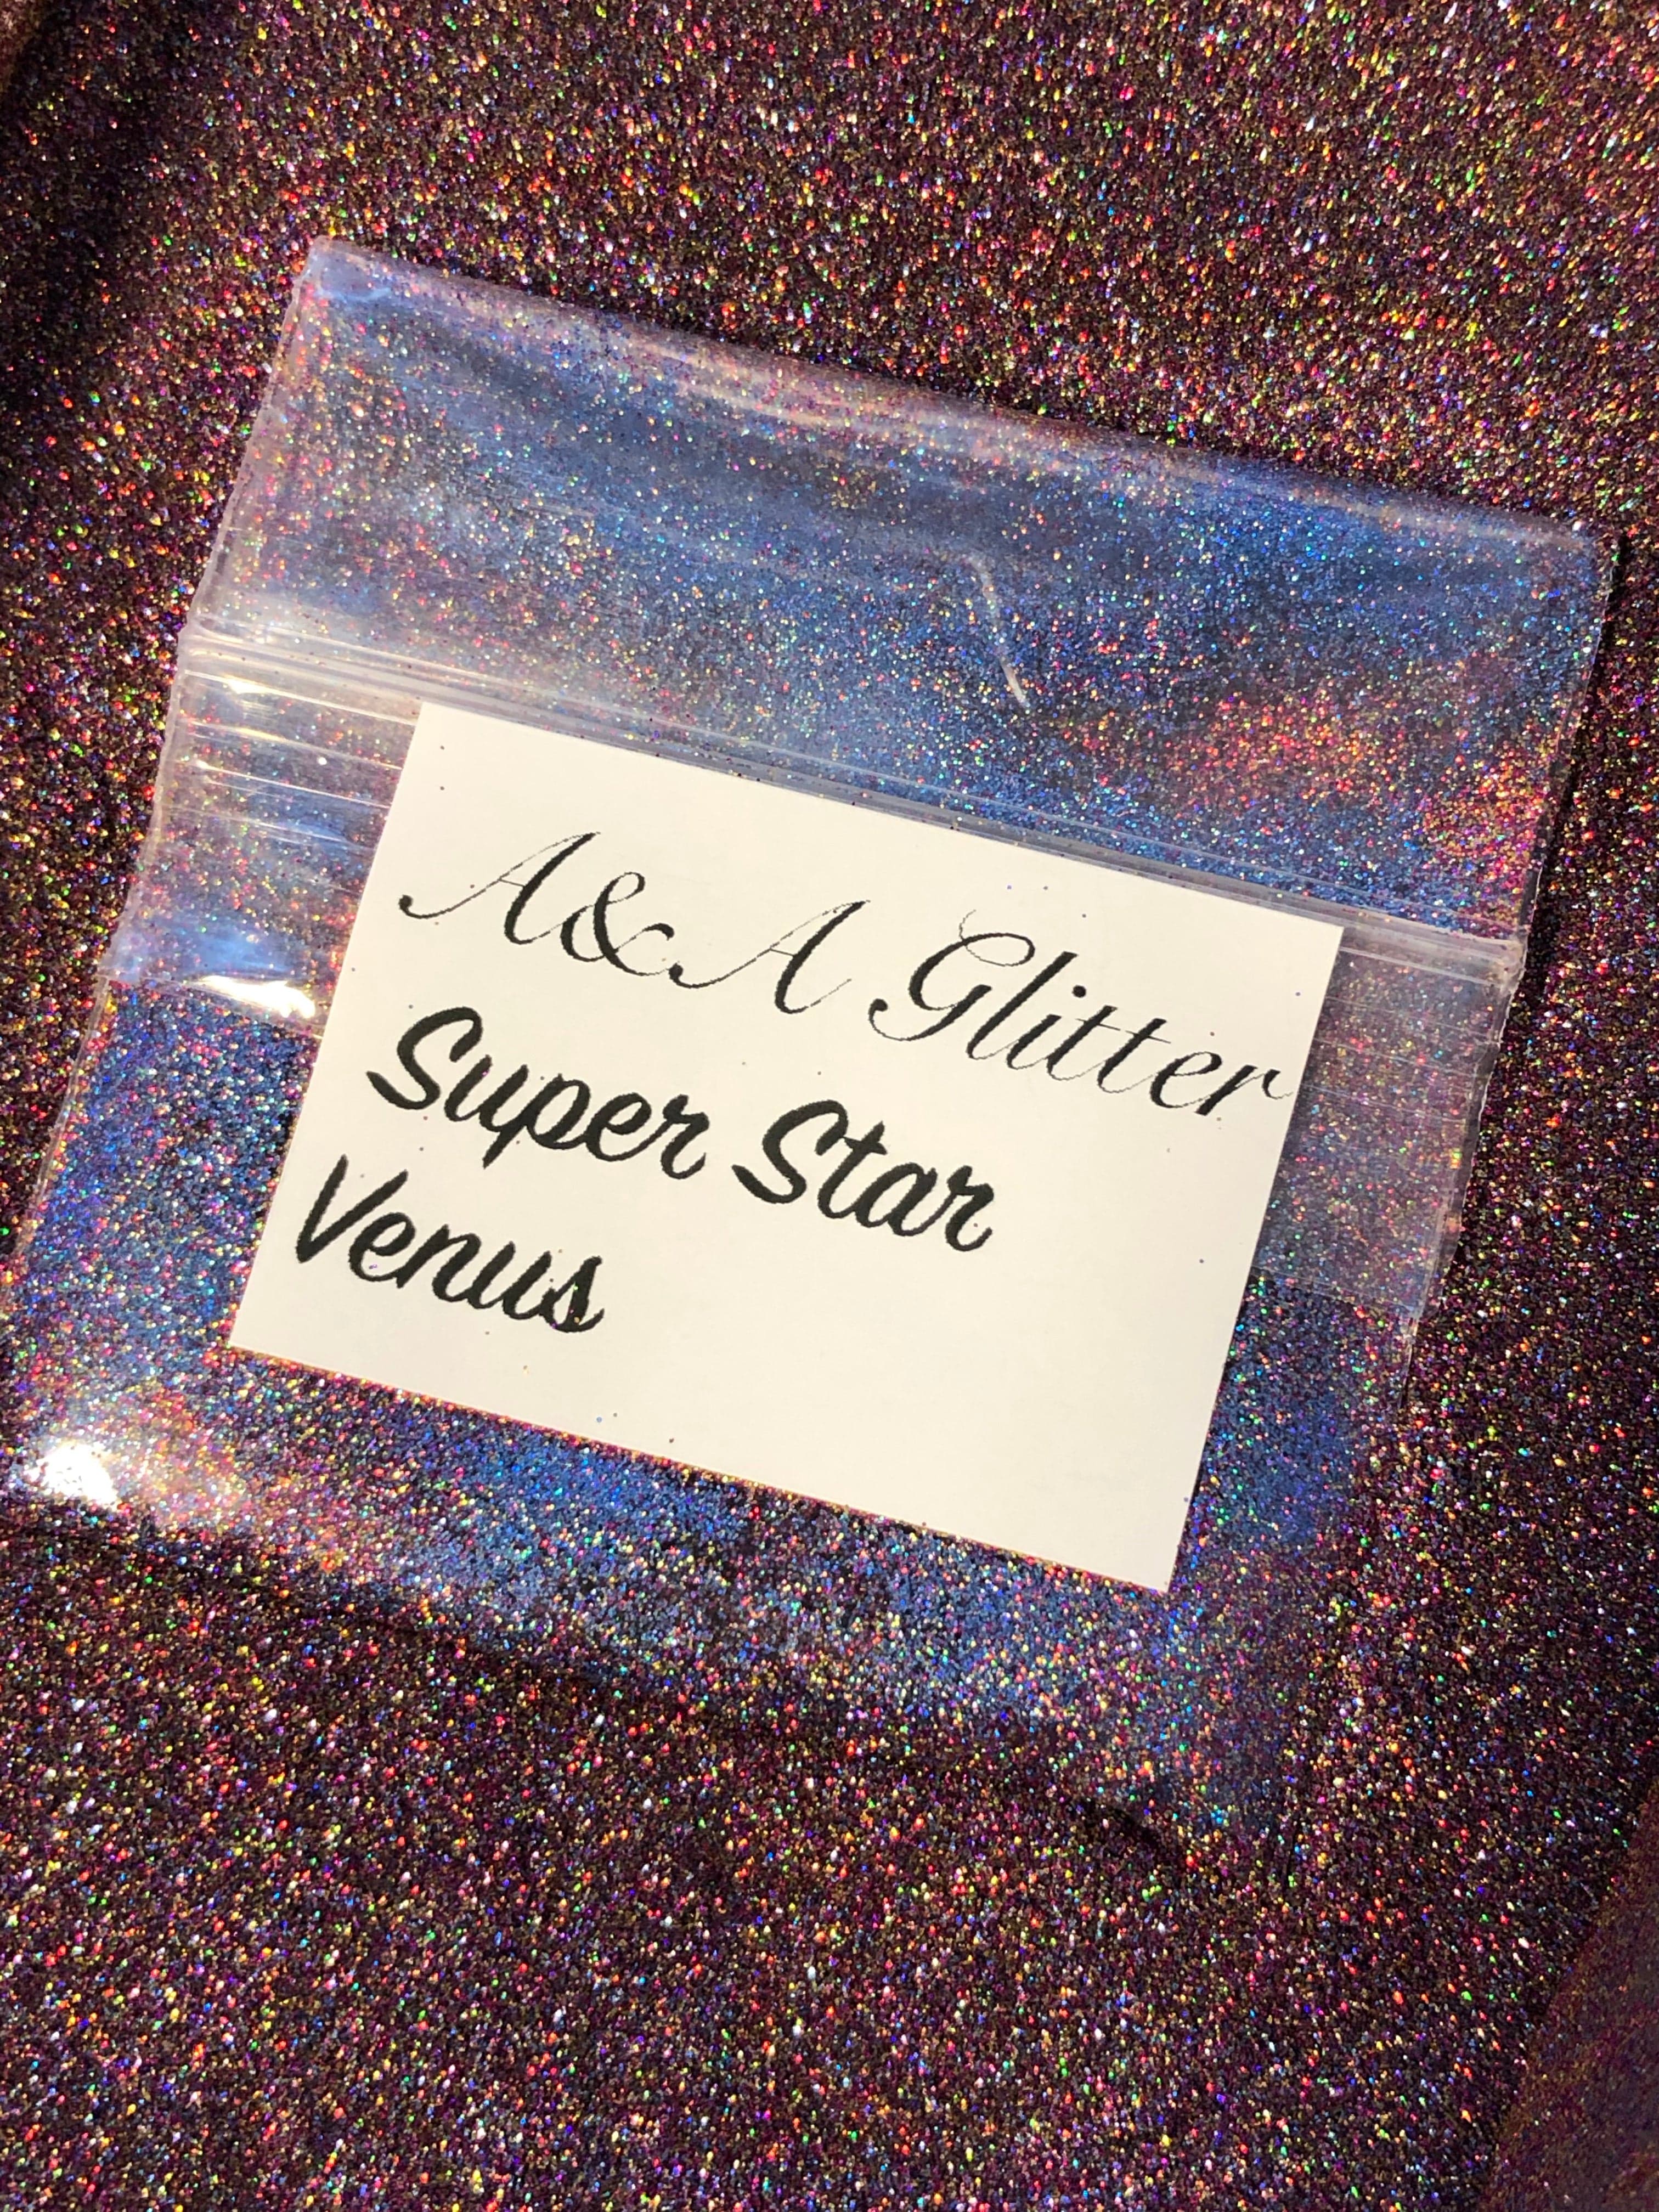 Super Star - Ultra Fine